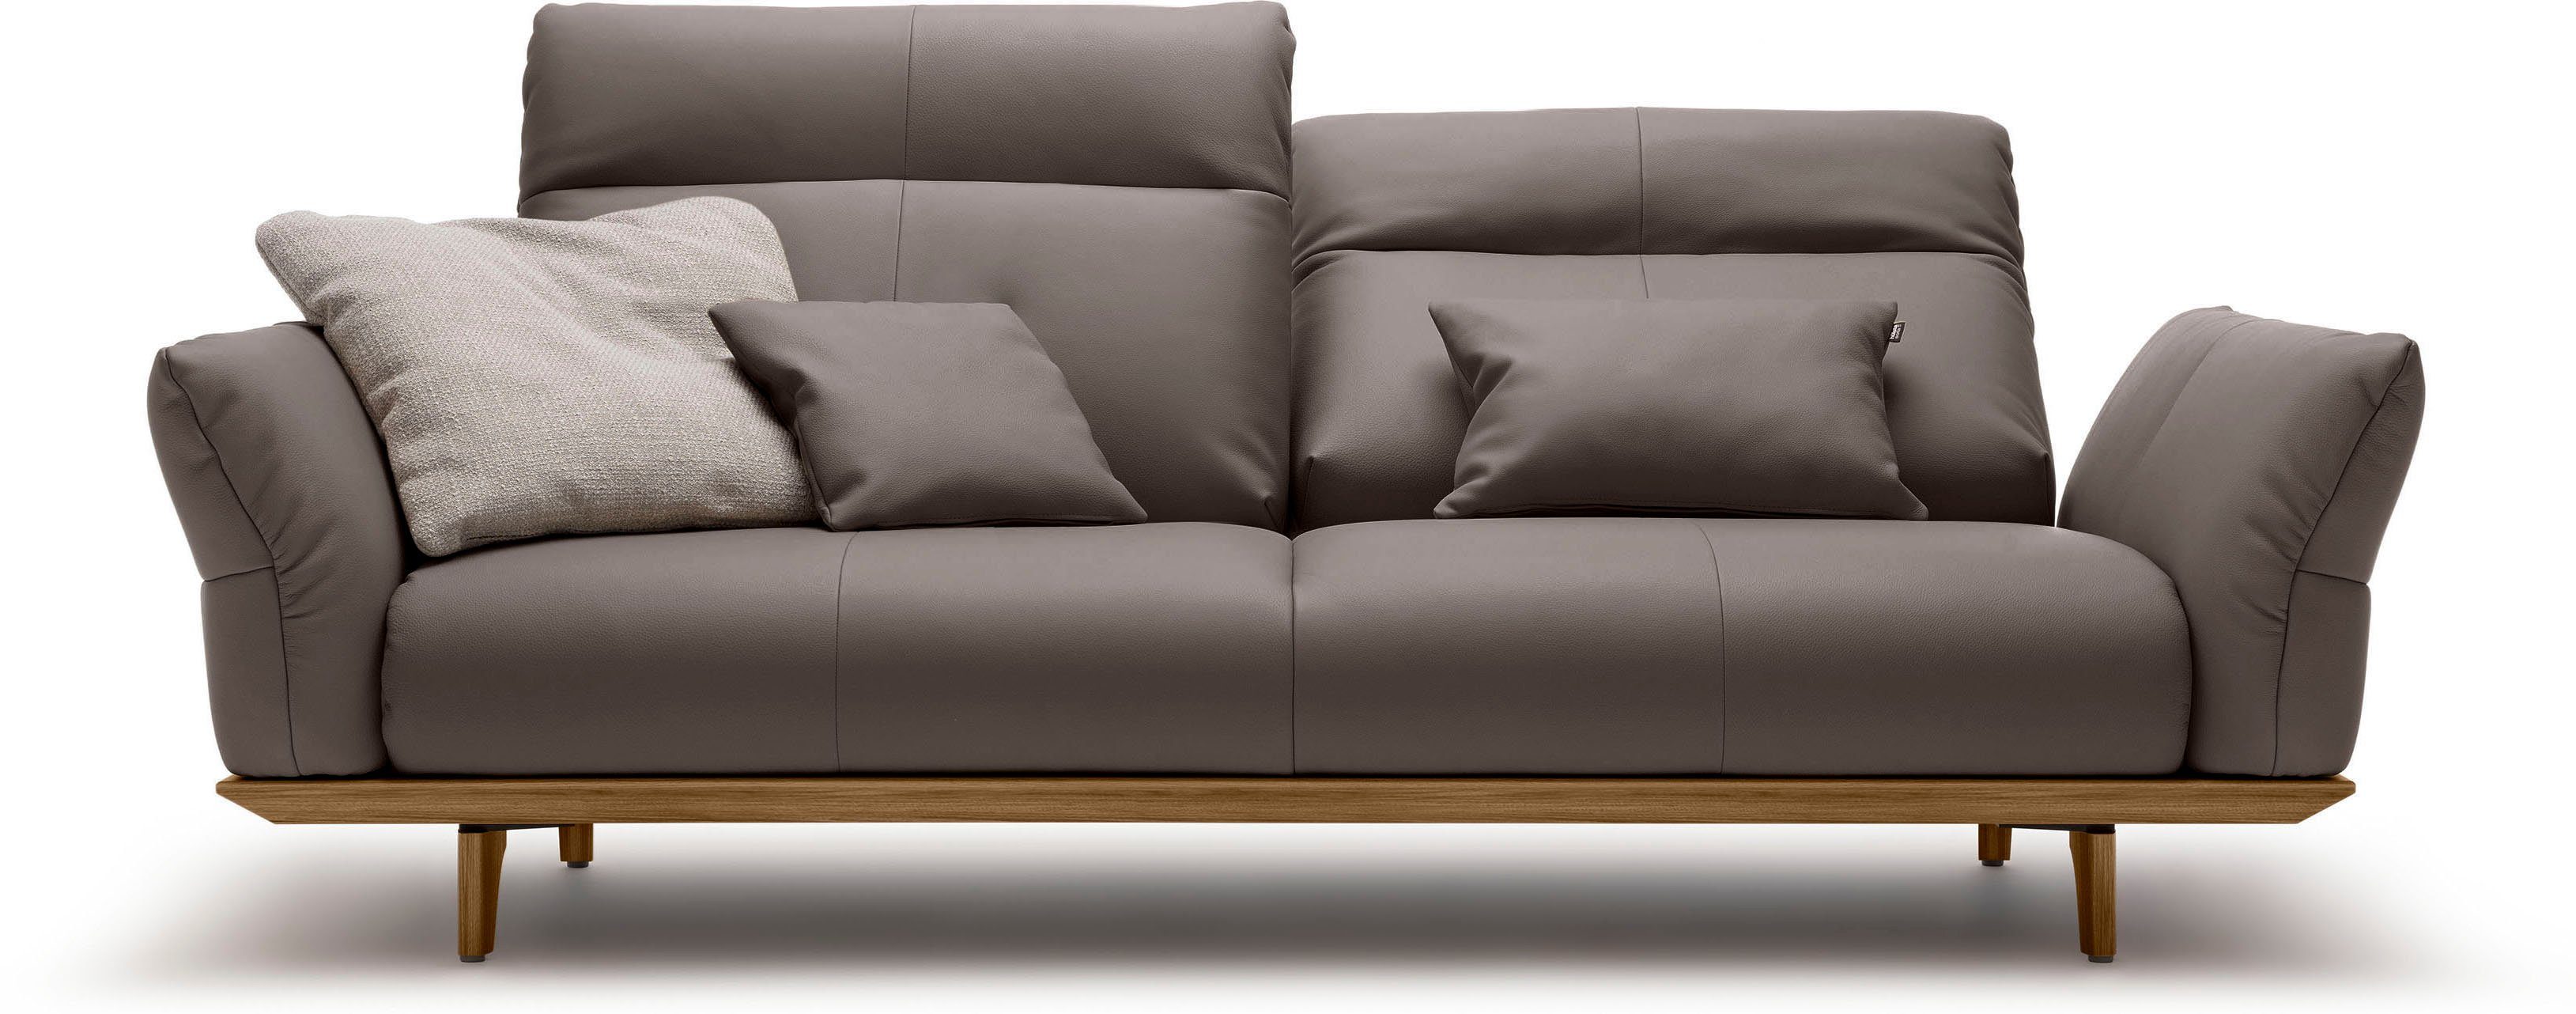 hülsta sofa 3-Sitzer hs.460, Sockel in Nussbaum, Füße Nussbaum, Breite 208 cm | Einzelsofas